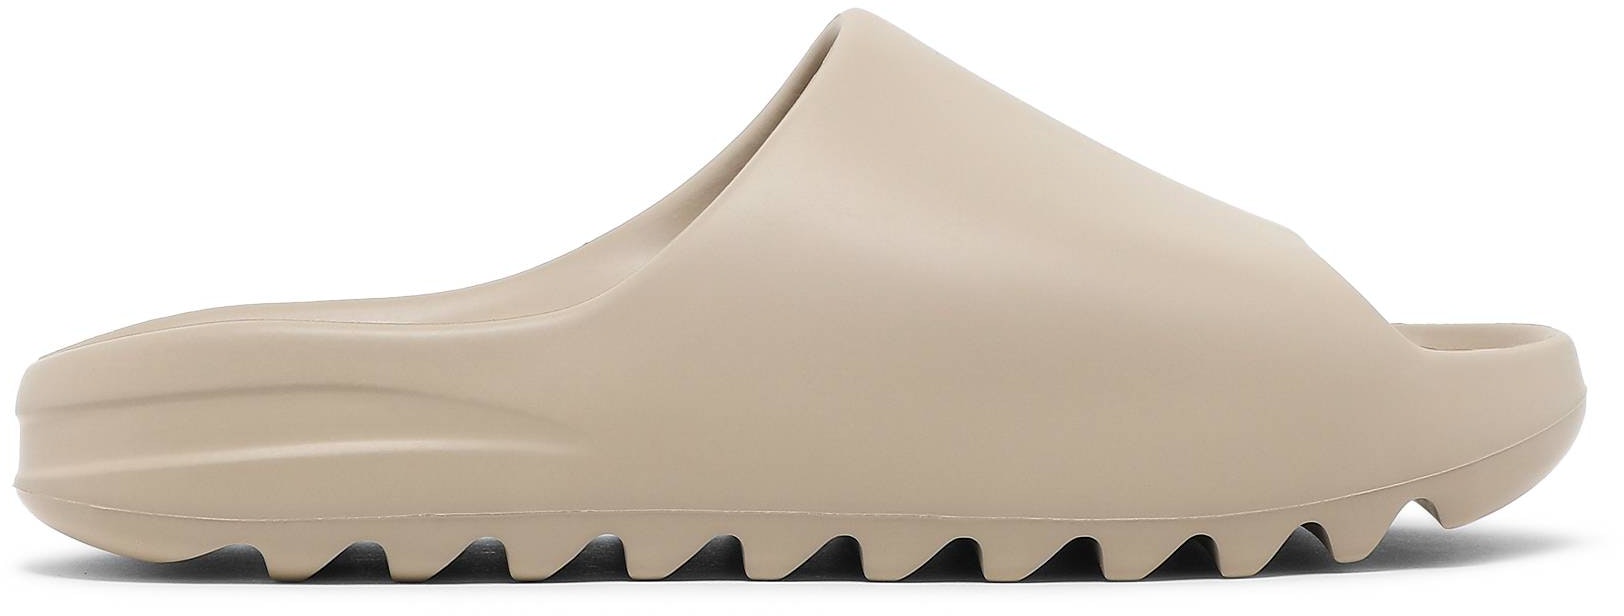 adidas Yeezy Slides 'Pure' - GZ5554 - Novelship